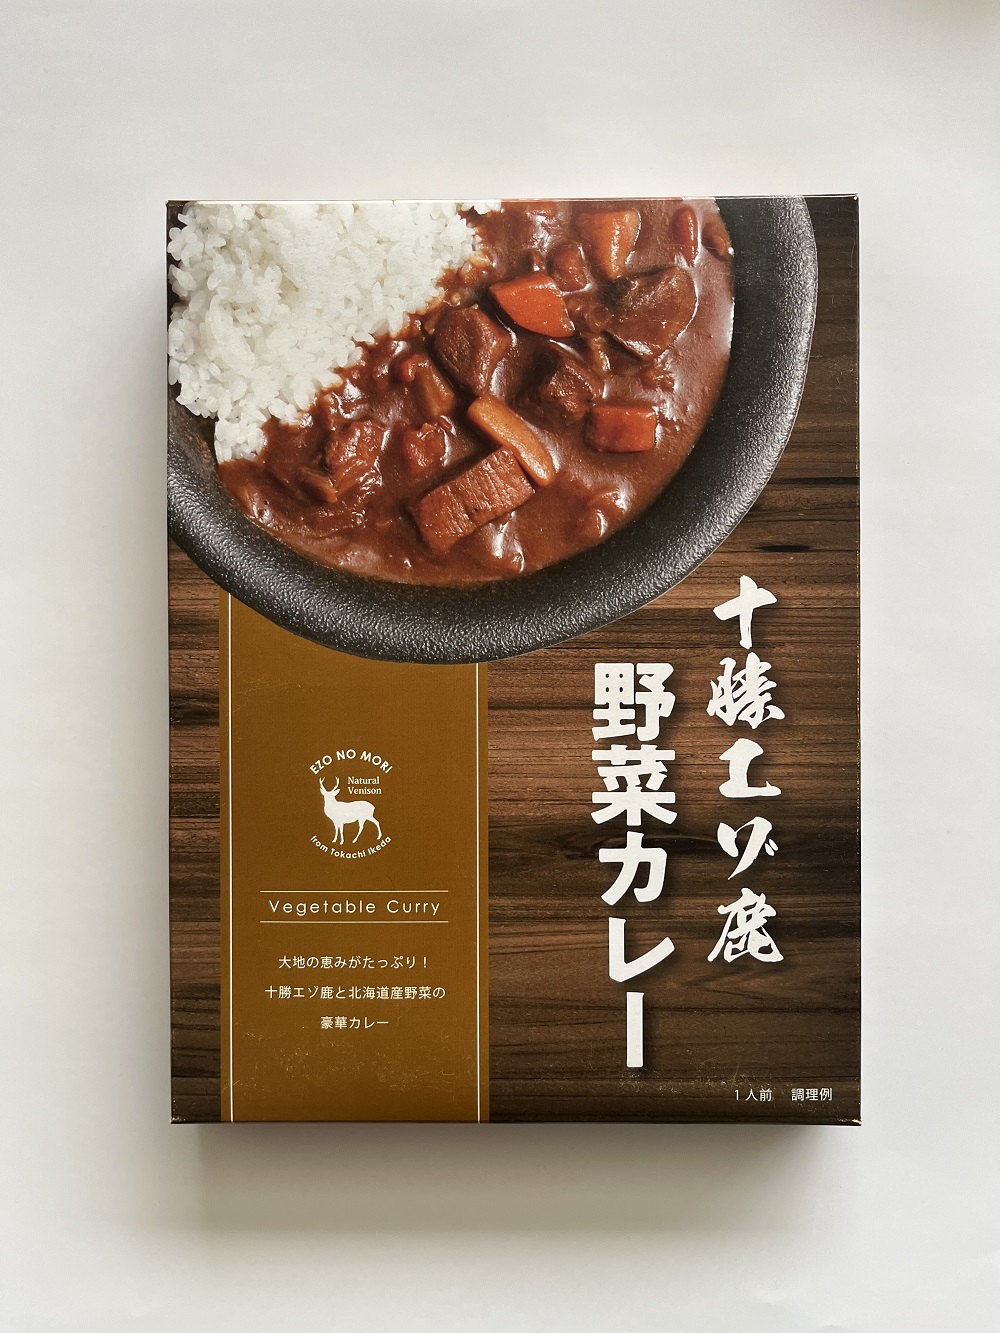 ジビエ 北海道  鹿肉  レトルト野菜カレー 5袋